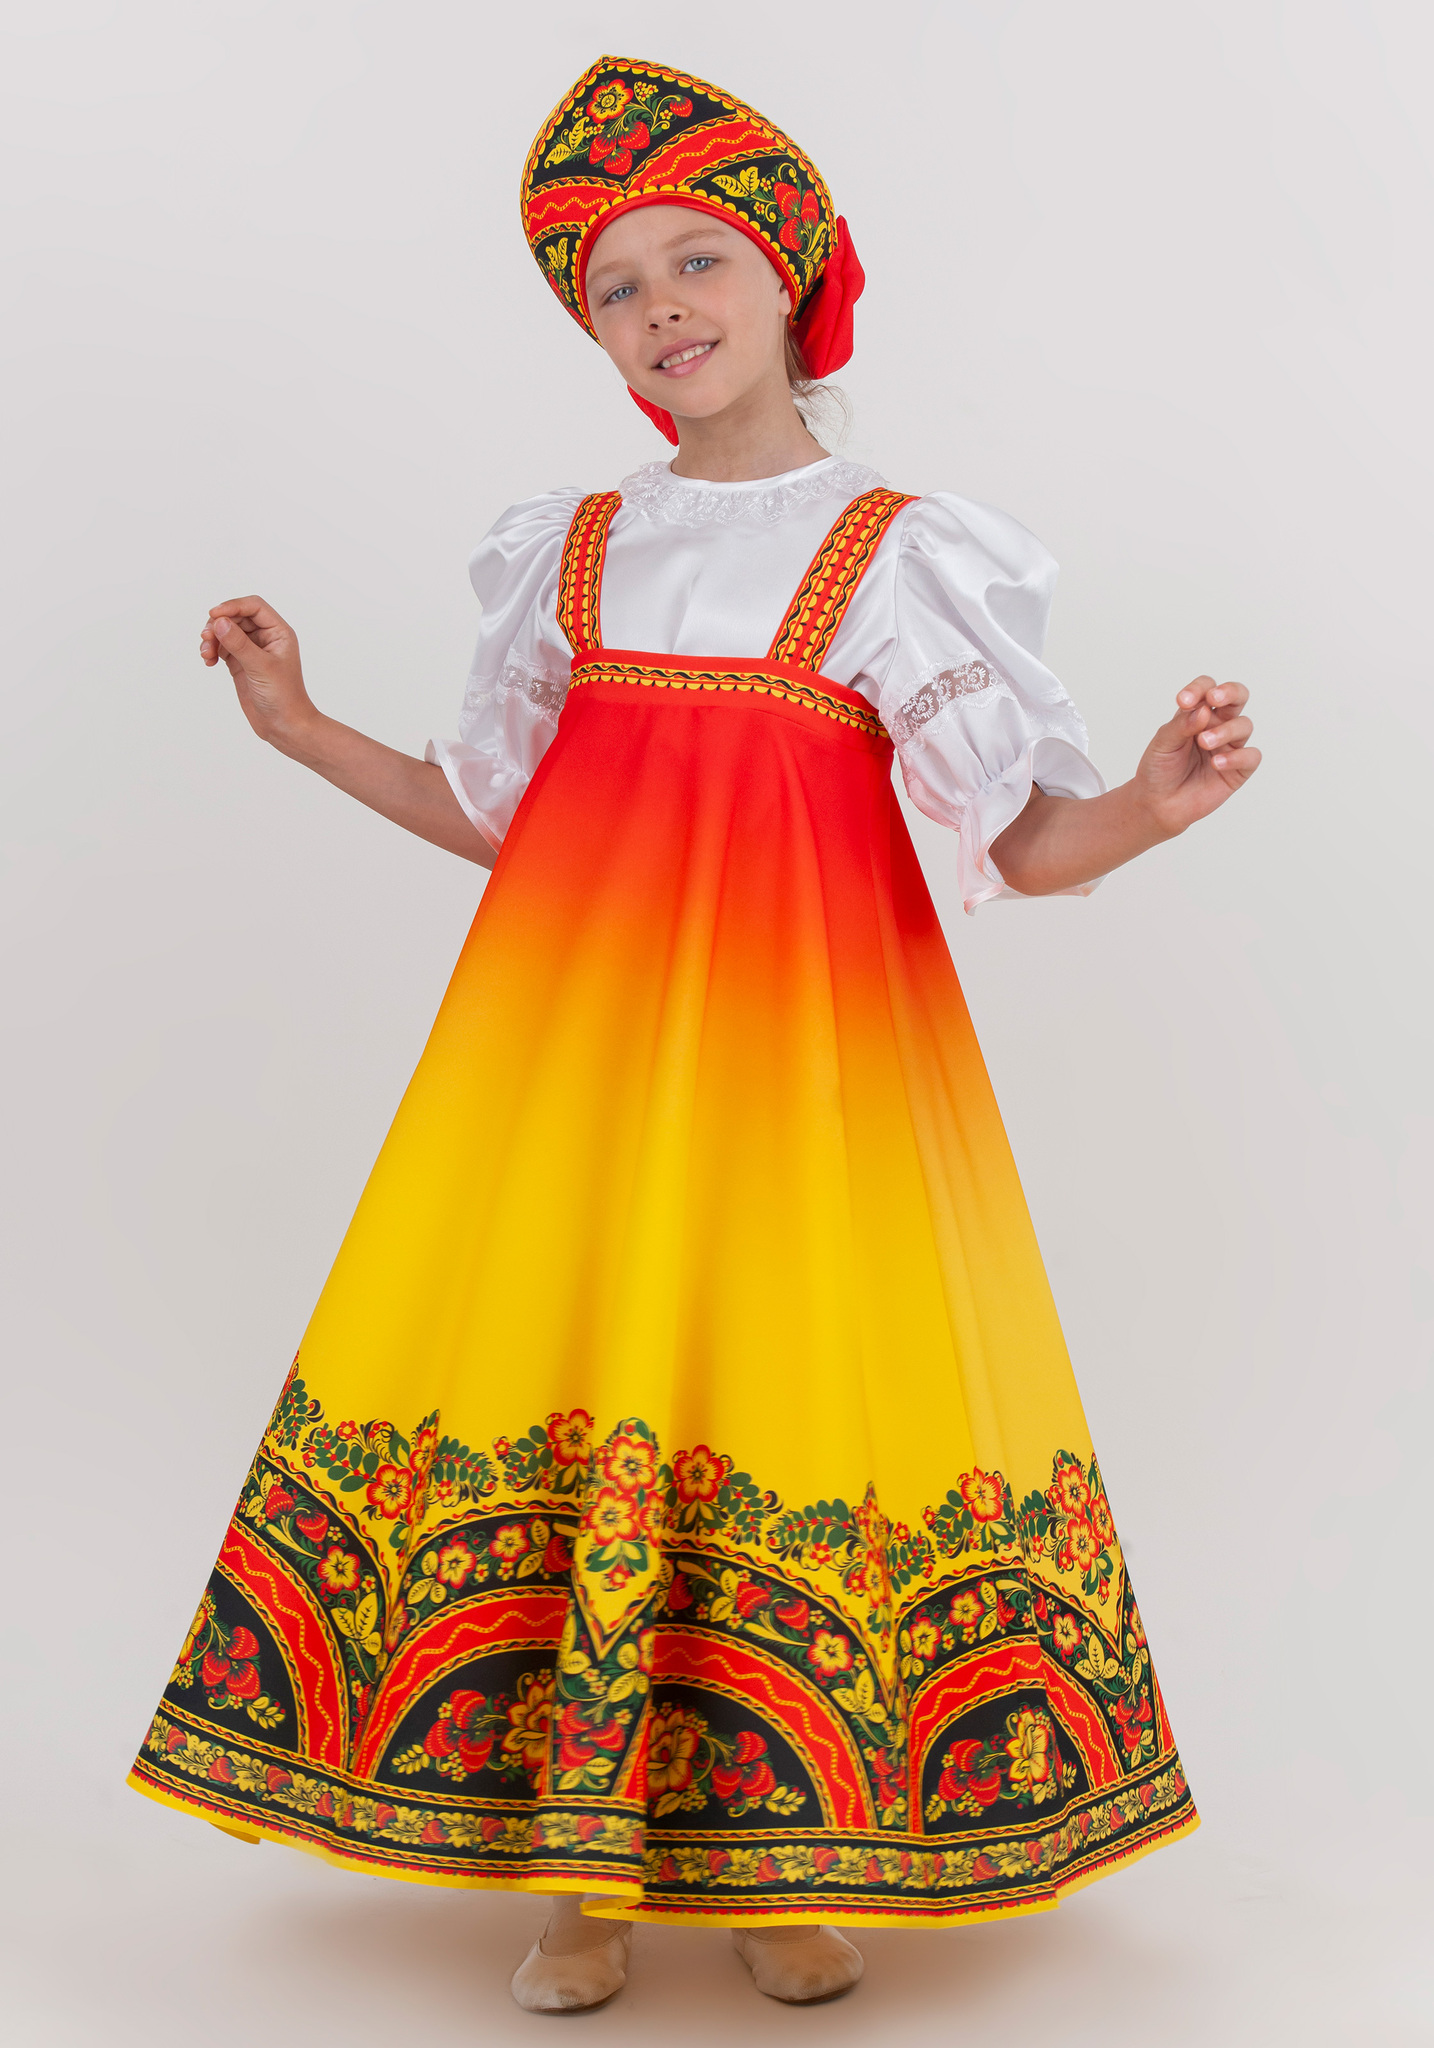 Купить русский народный костюм для девочки в Санкт-Петербурге недорого: интернет-магазин АРЛЕКИН